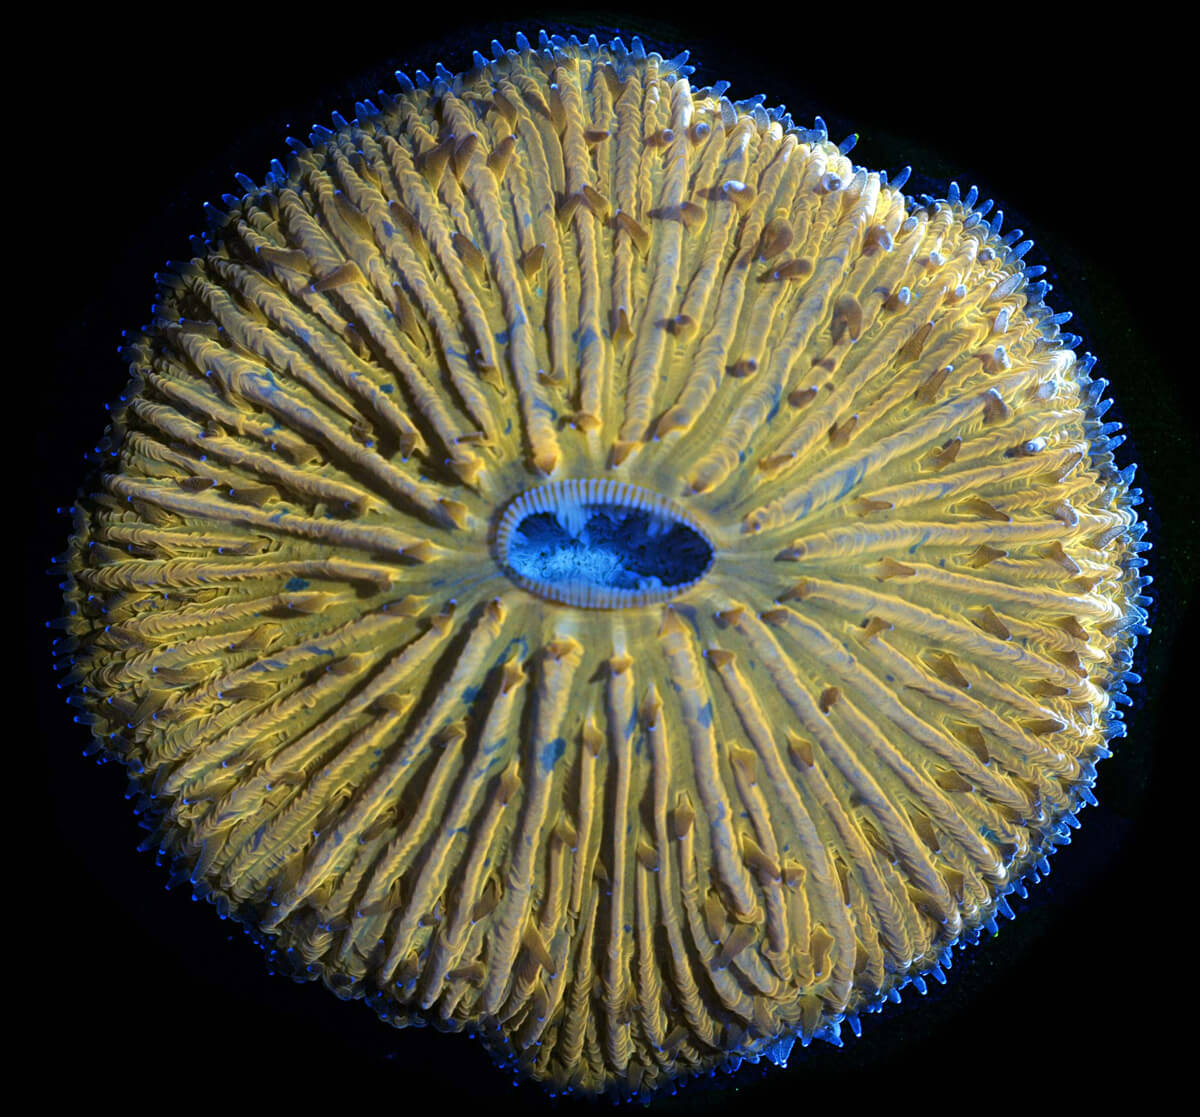 ilginç deniz canlısı - turuncu mercan